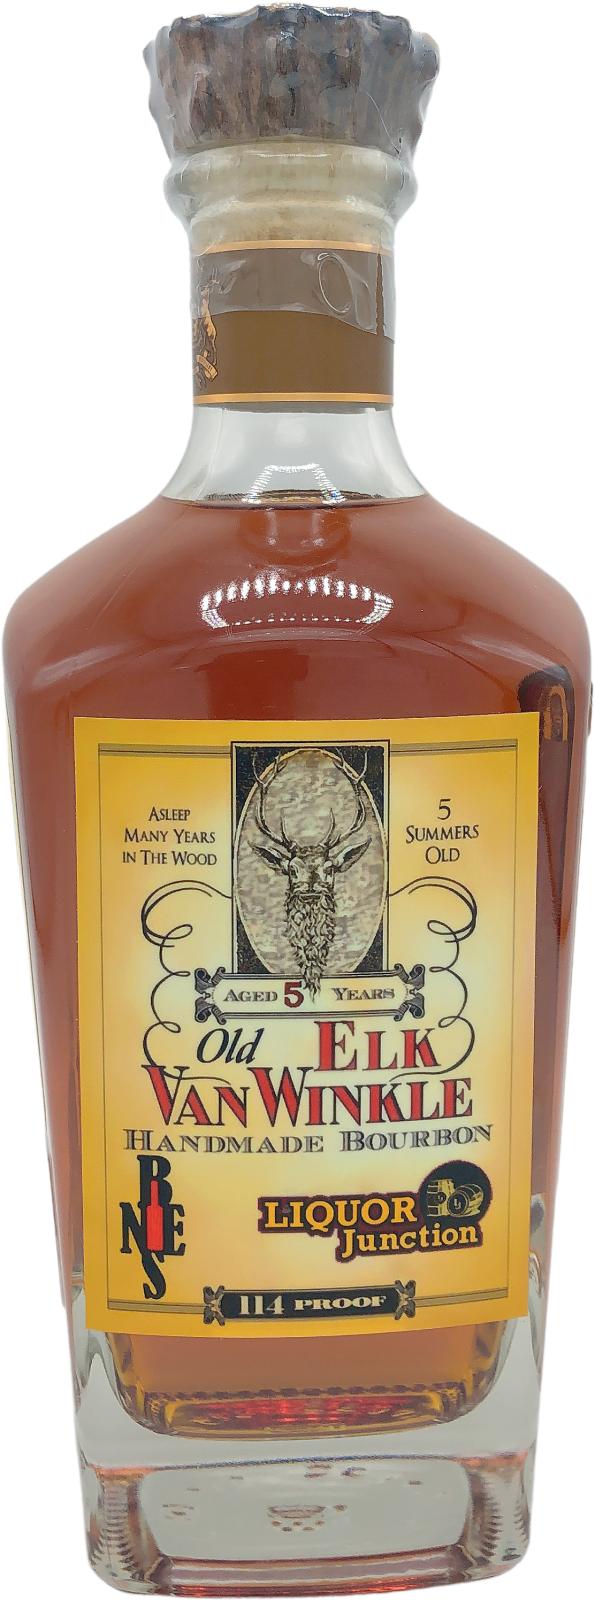 Old Elk 5yo Liquor Junction and NEBS 56.75% 750ml